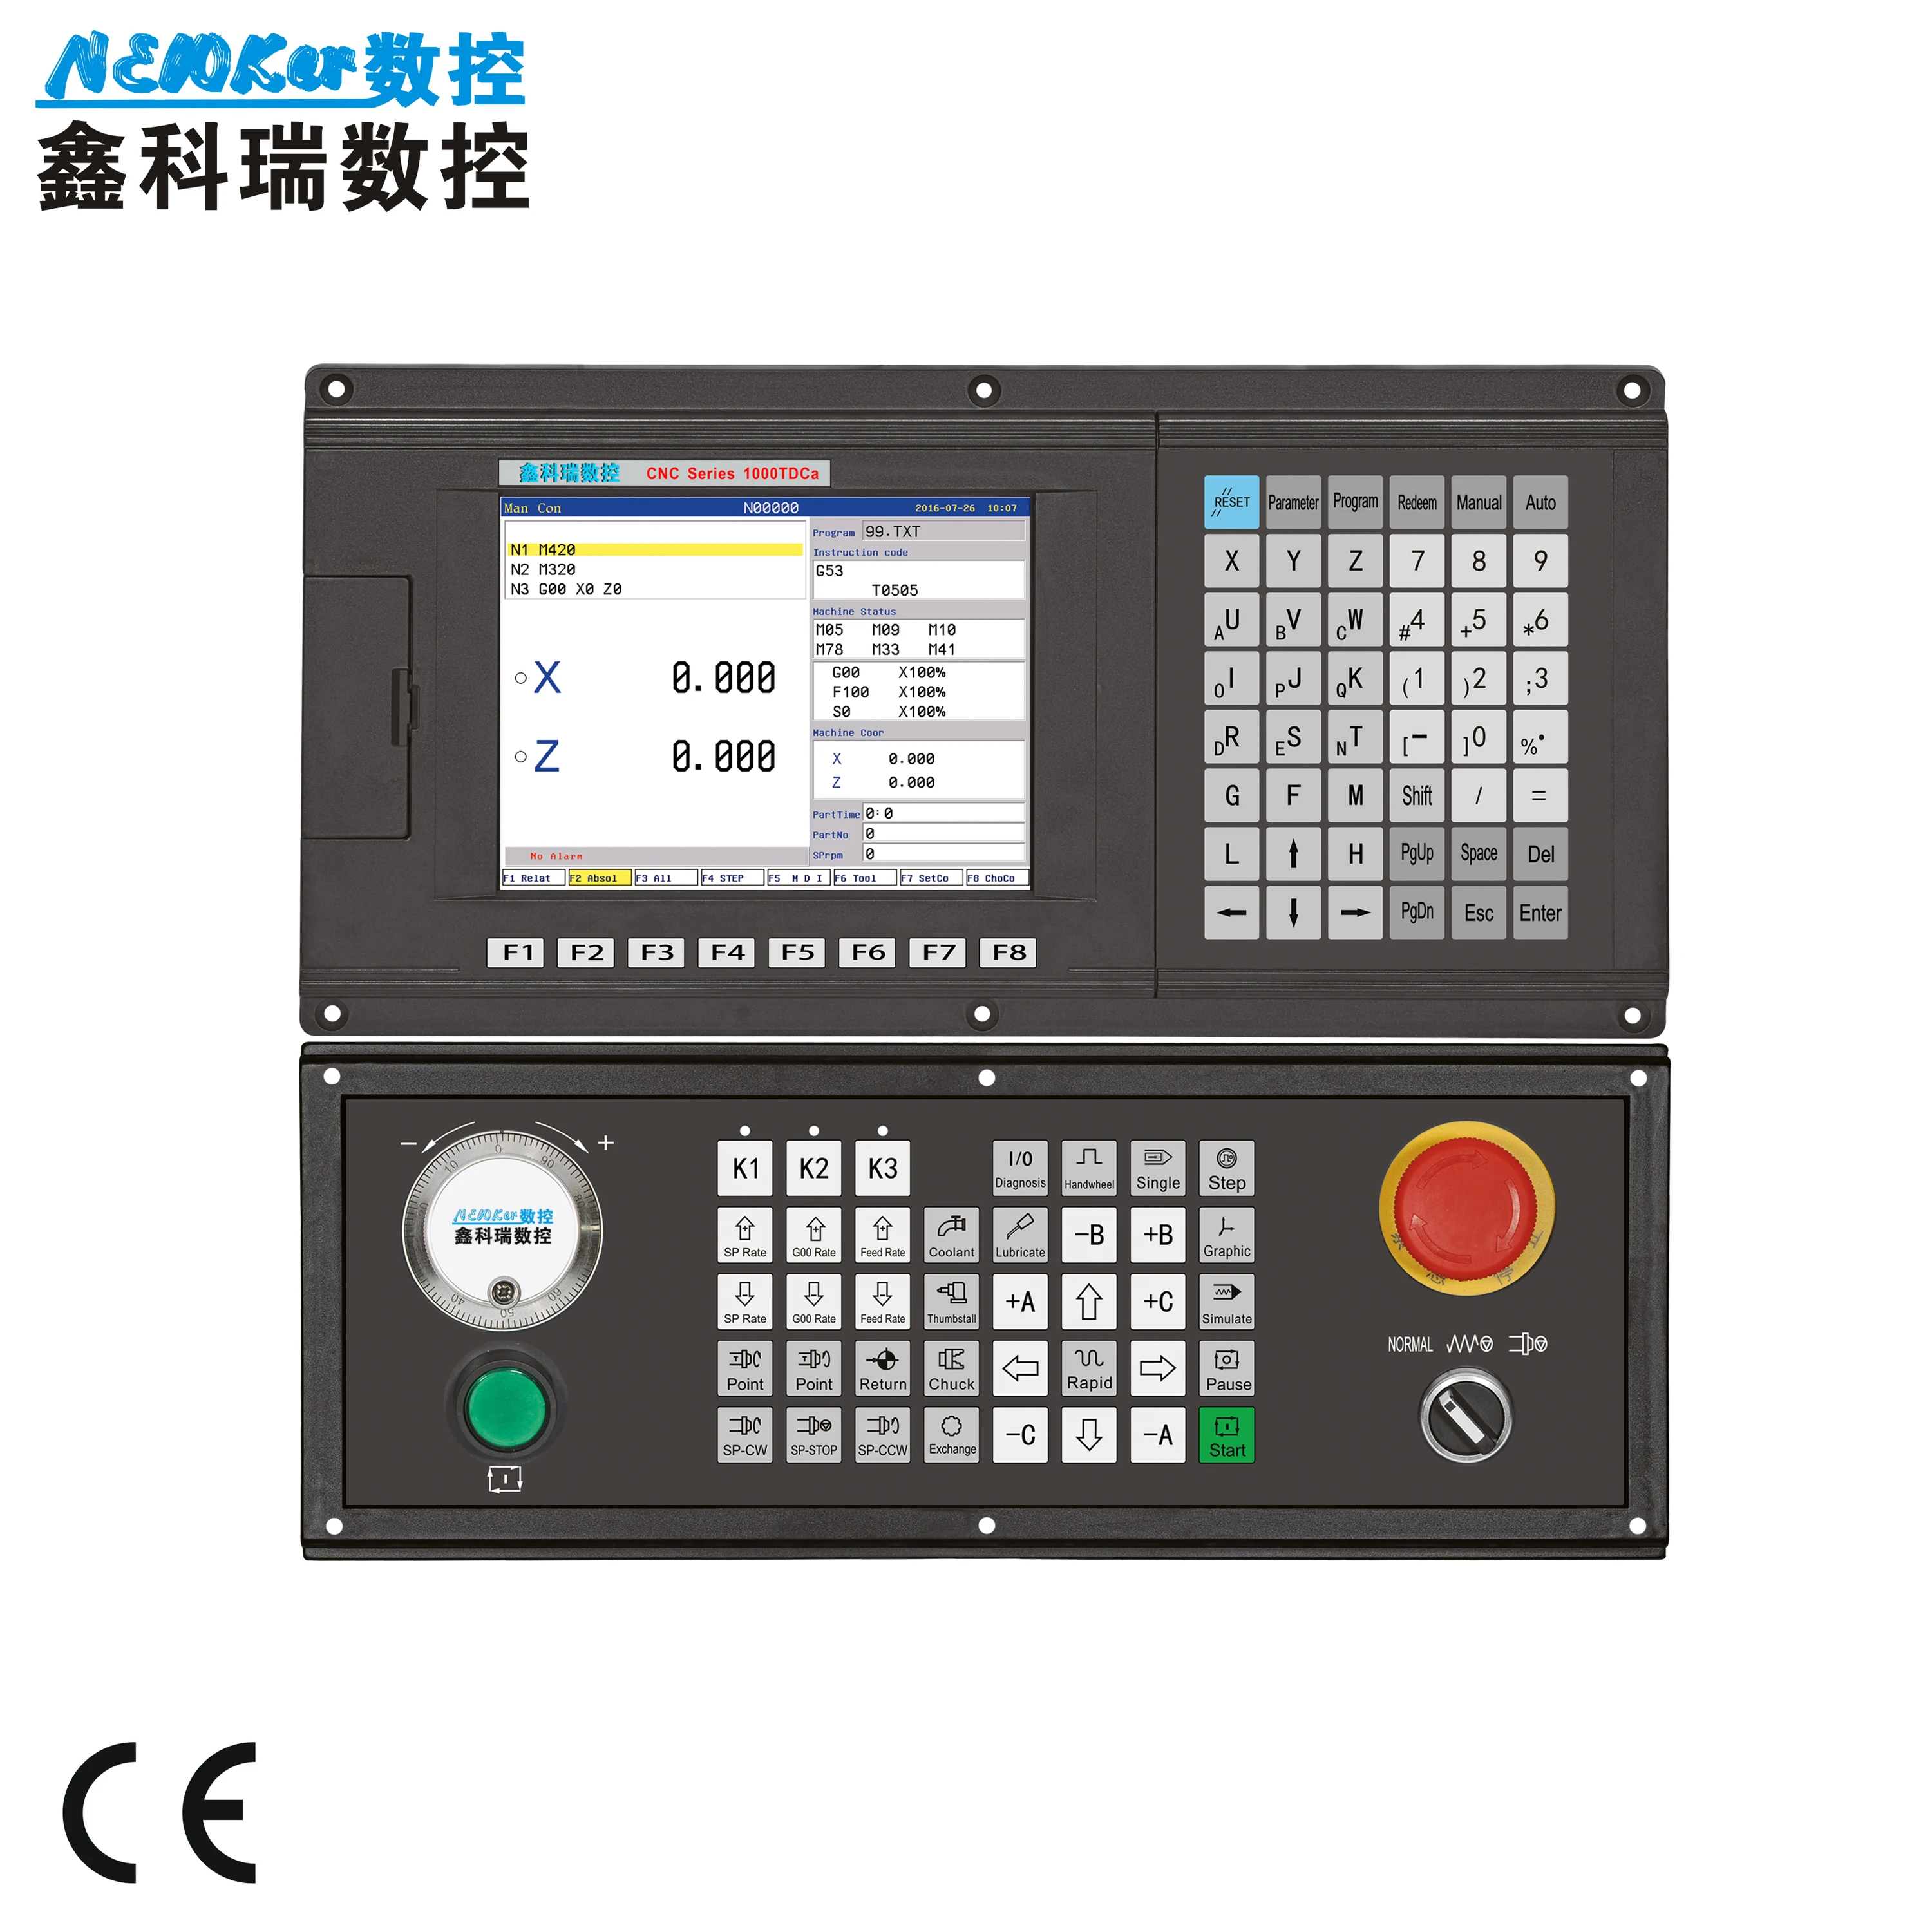 2 оси PLC CNC контроллер для ЧПУ резки и шлифования, онлайн контроллер G код Заменить Mach3